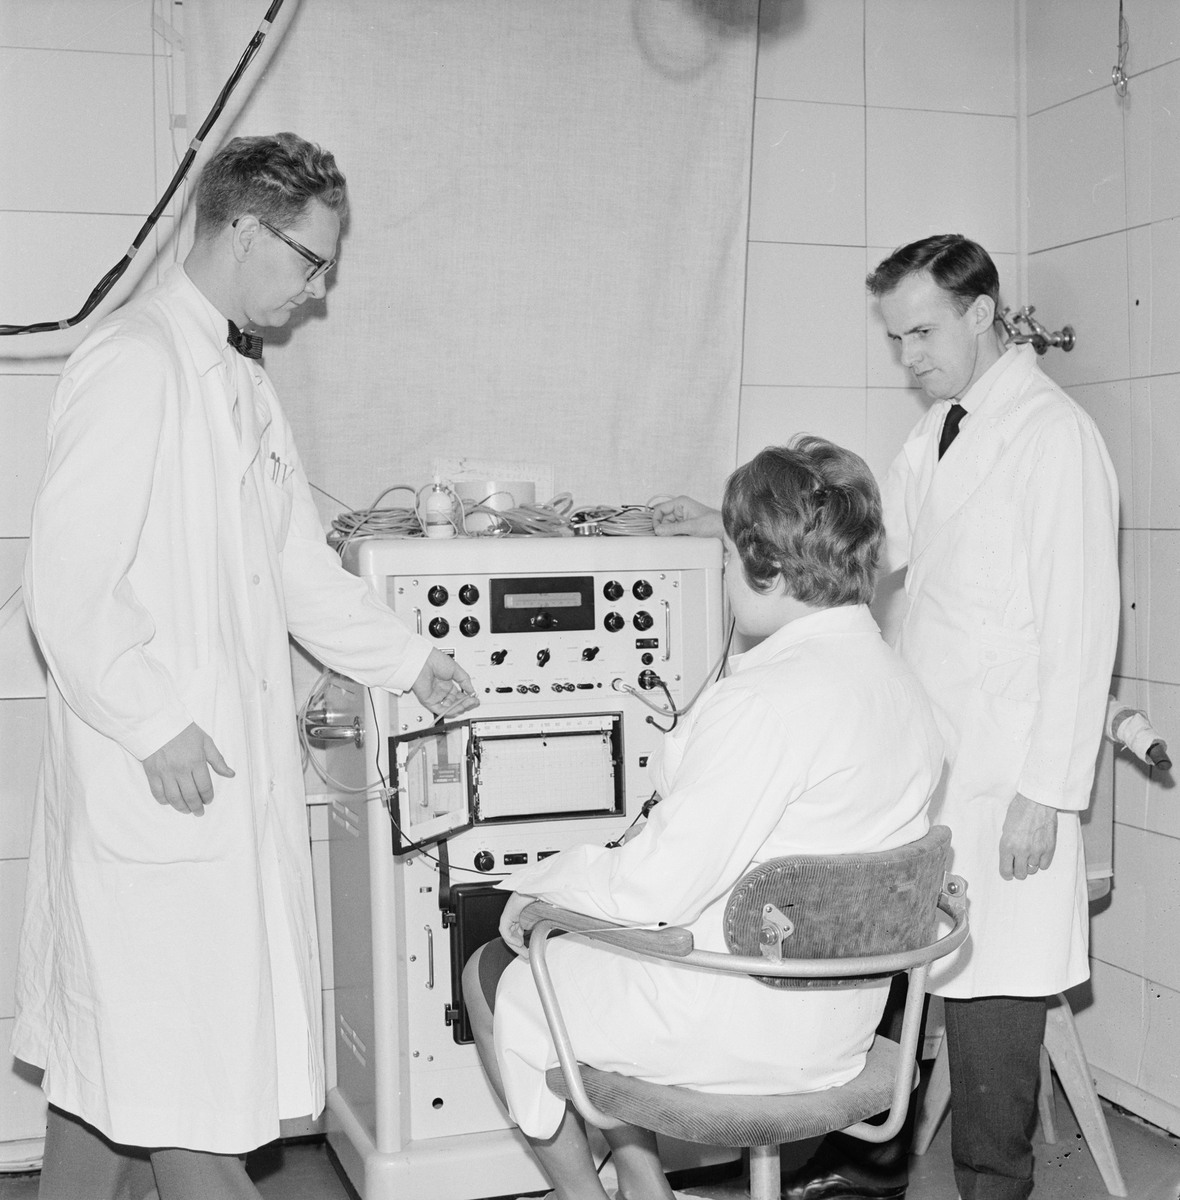 Akademiska sjukhuset - "Gustavianska arvegodsen räddade snuvforskningen", Uppsala maj 1961